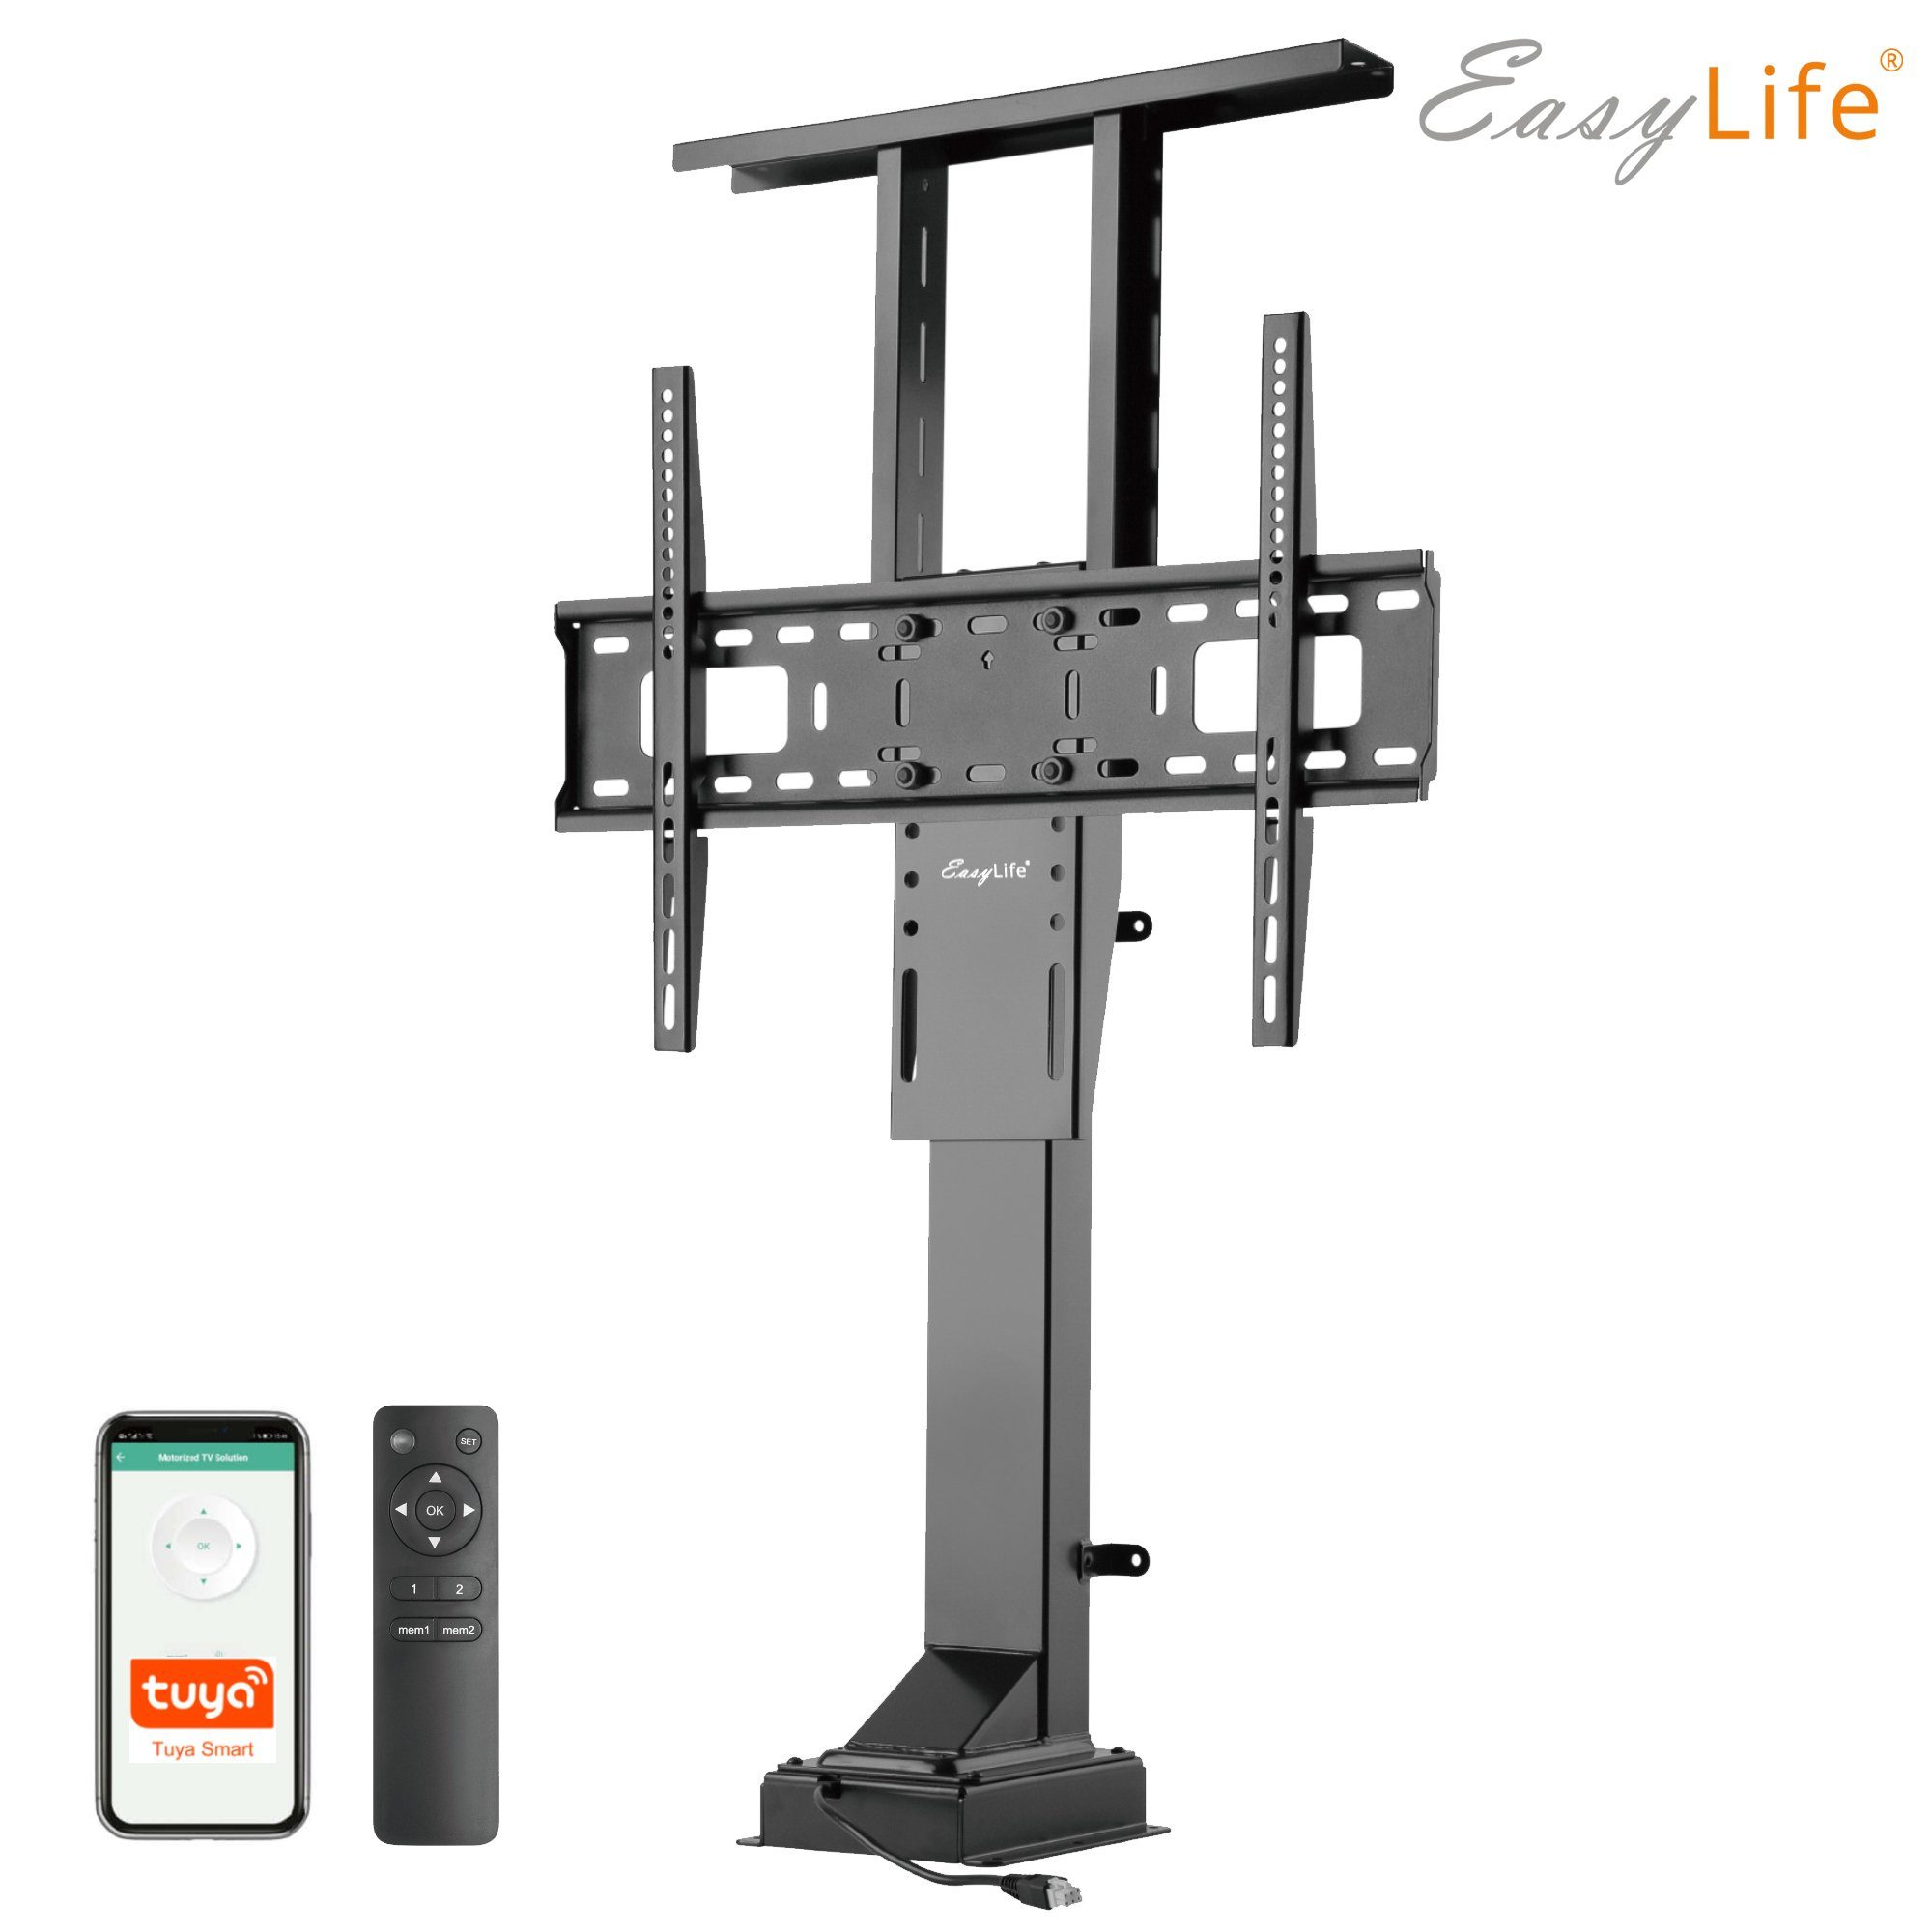 & easylife Bodenständer elektrisch, TV Fernbedienung TV-Ständer Steuerung Smart Home Lift/